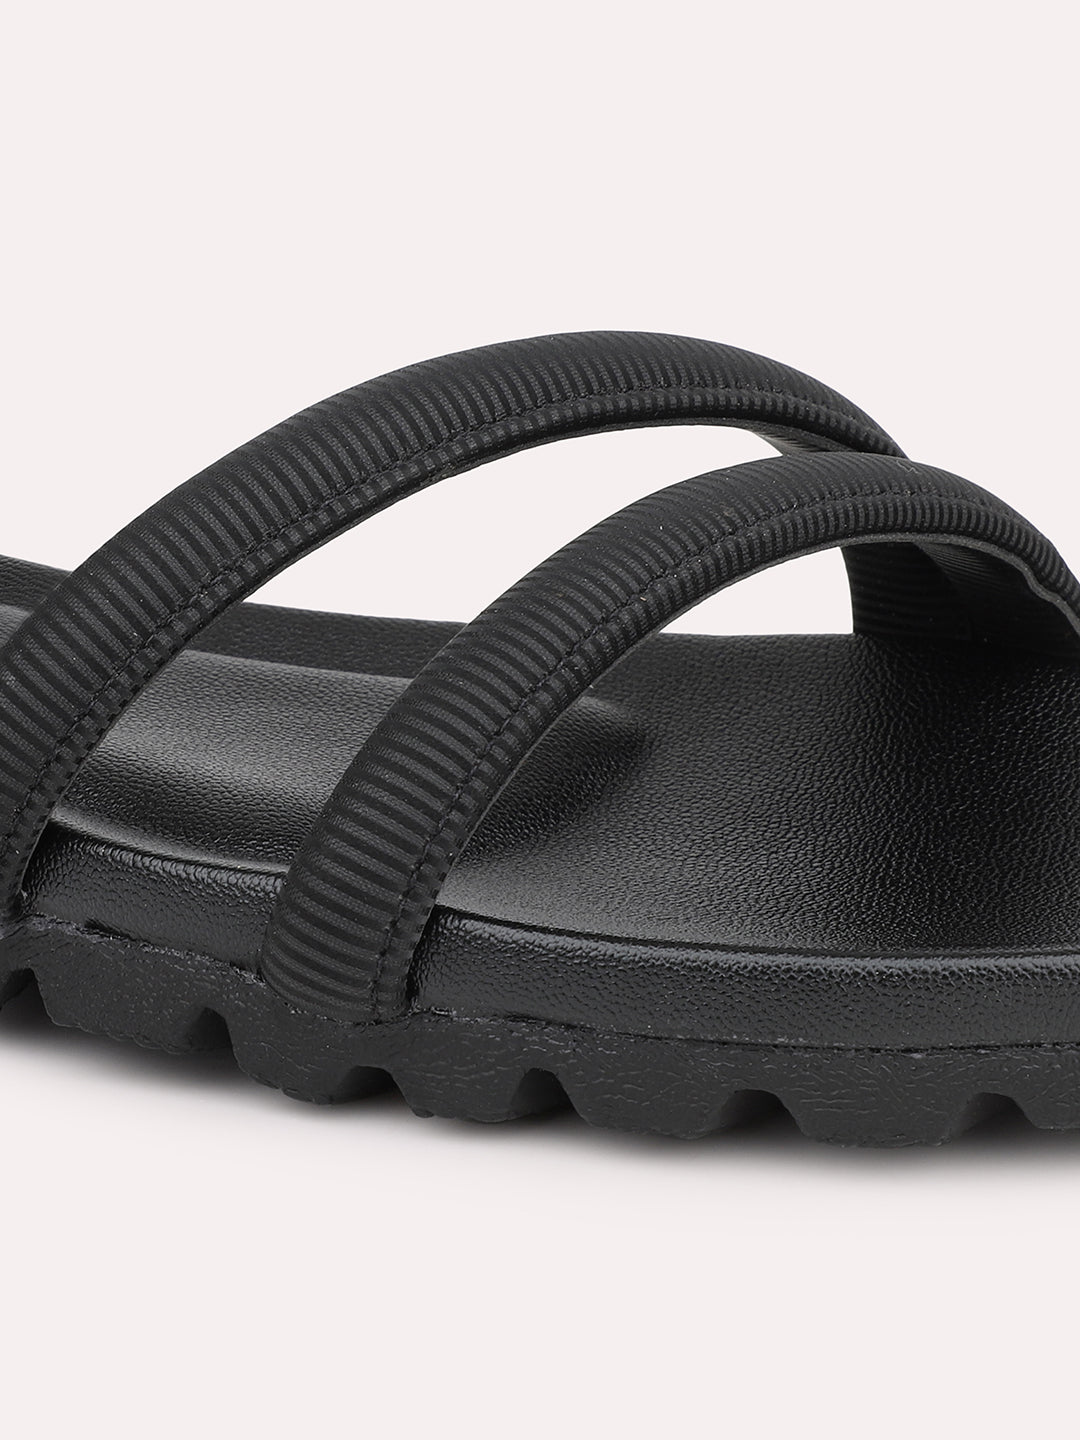 Women Black Solid Flats Sandals